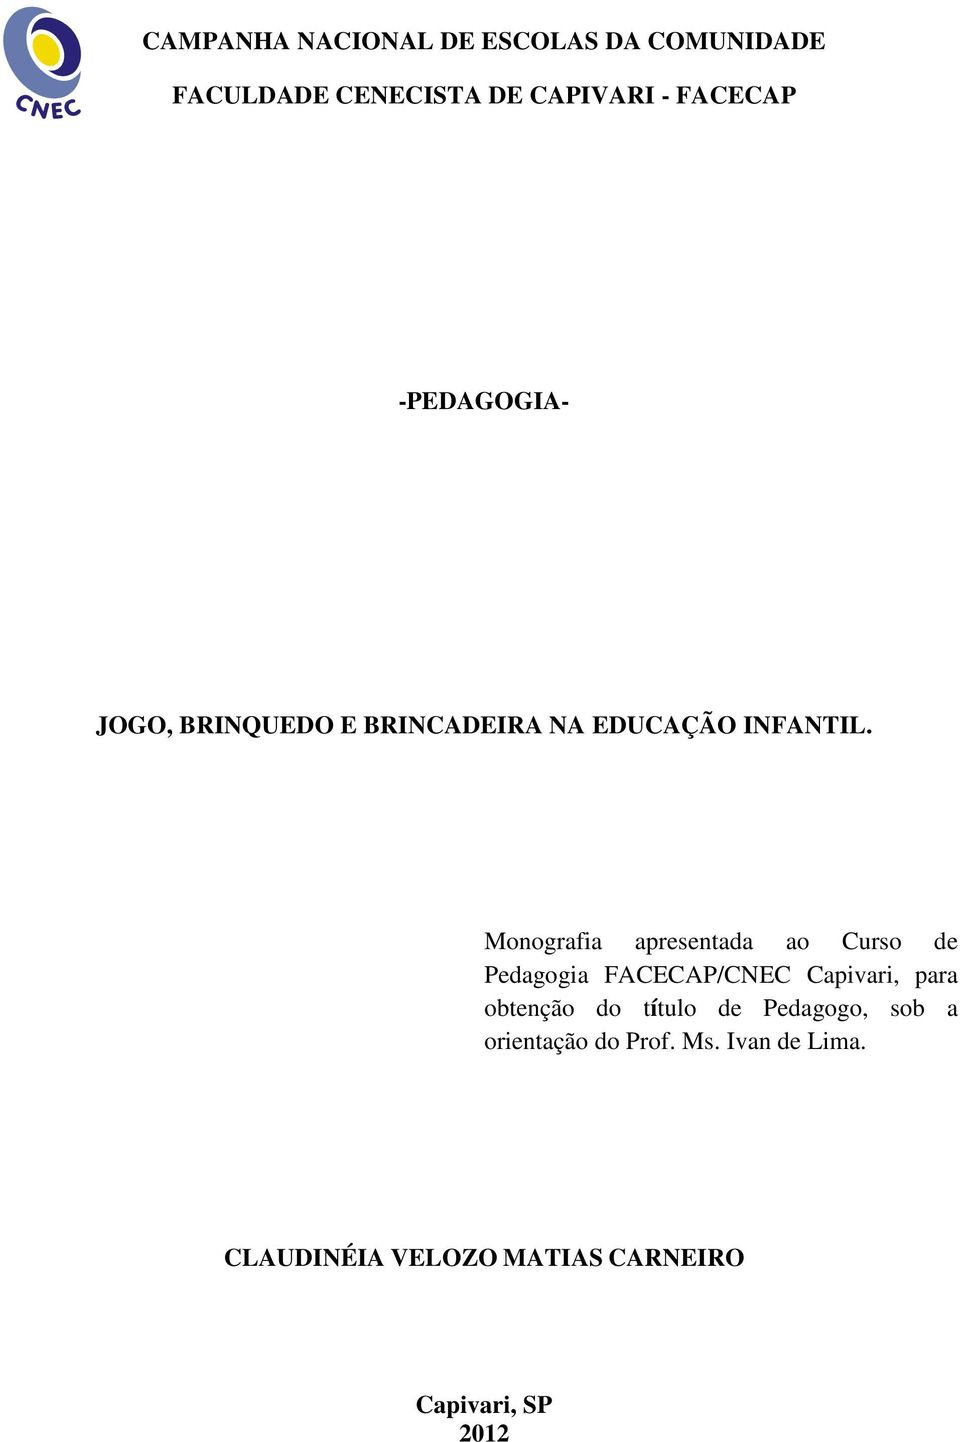 Monografia apresentada ao Curso de Pedagogia FACECAP/CNEC Capivari, para obtenção do